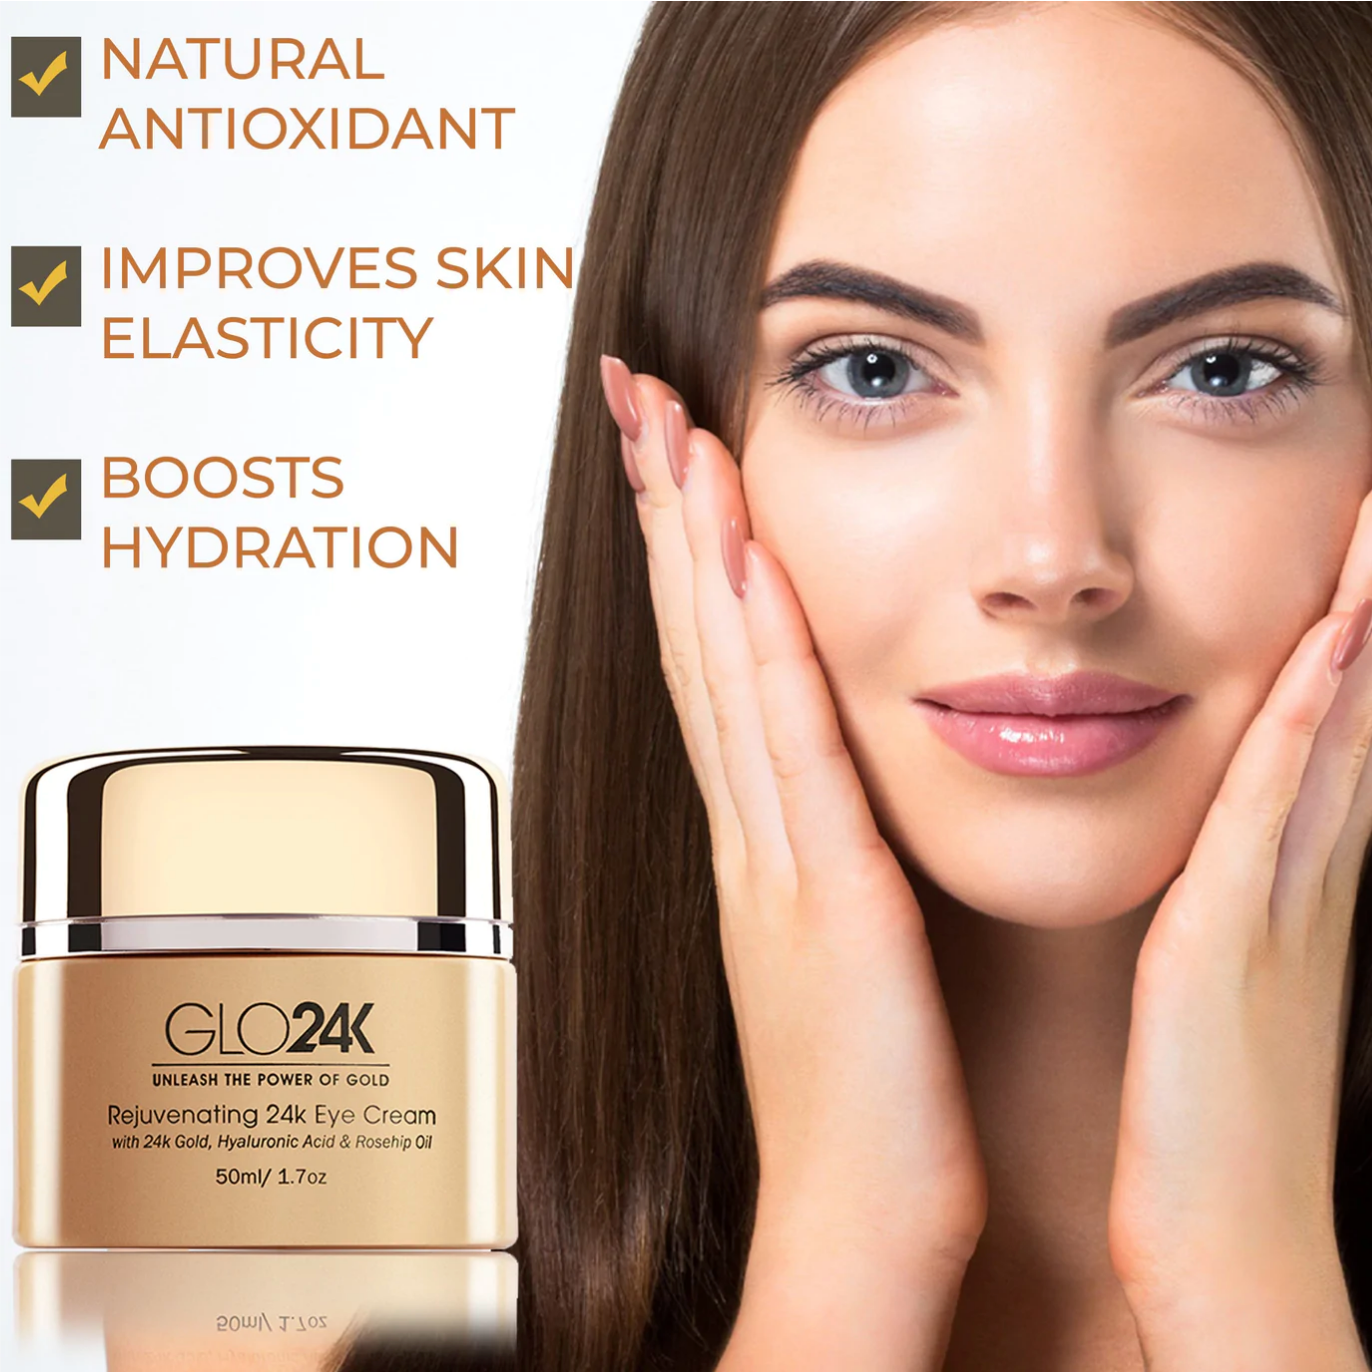 GLO24K Rejuvenating 24k Eye Cream, benefits